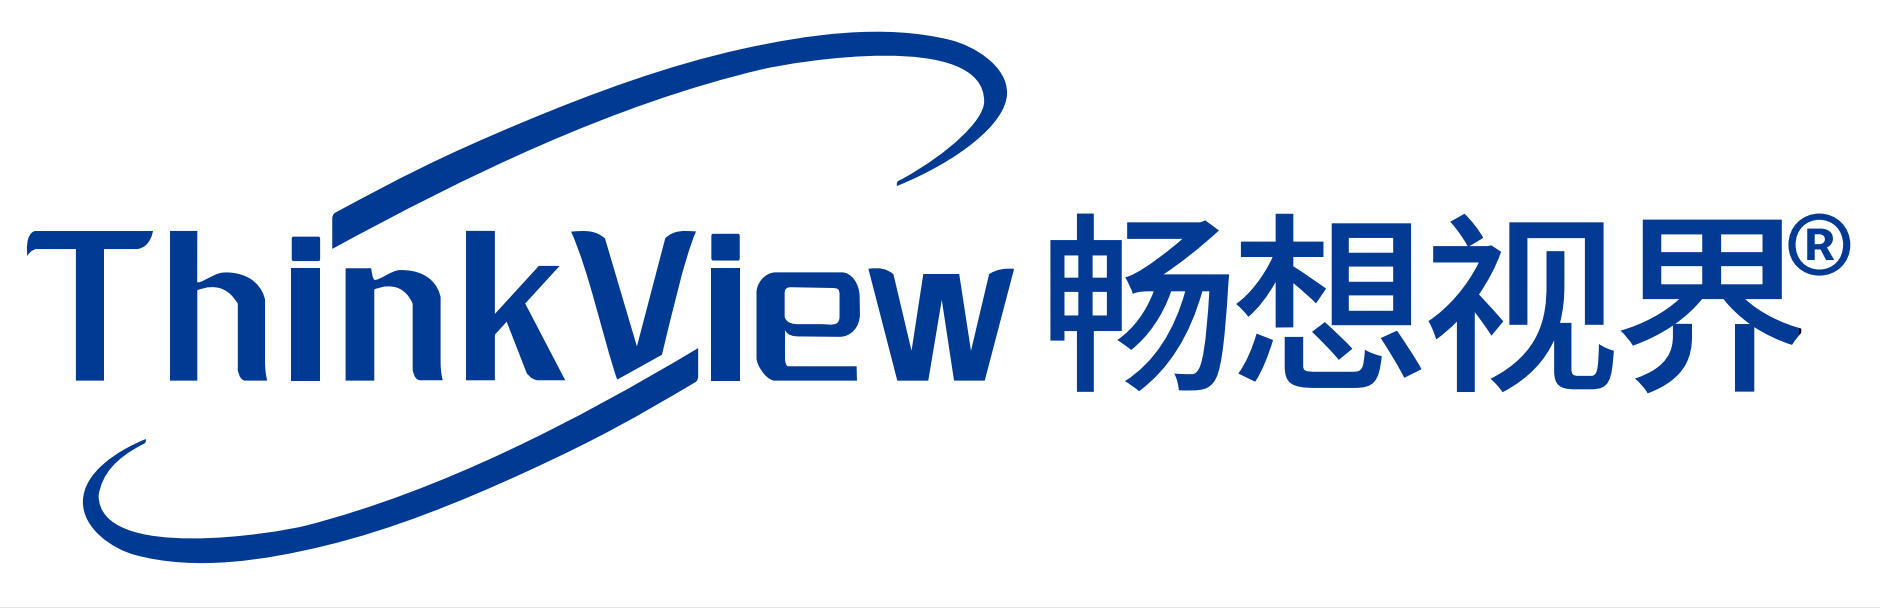 ʻO Shenzhen Thinkview Technology Co., Ltd.